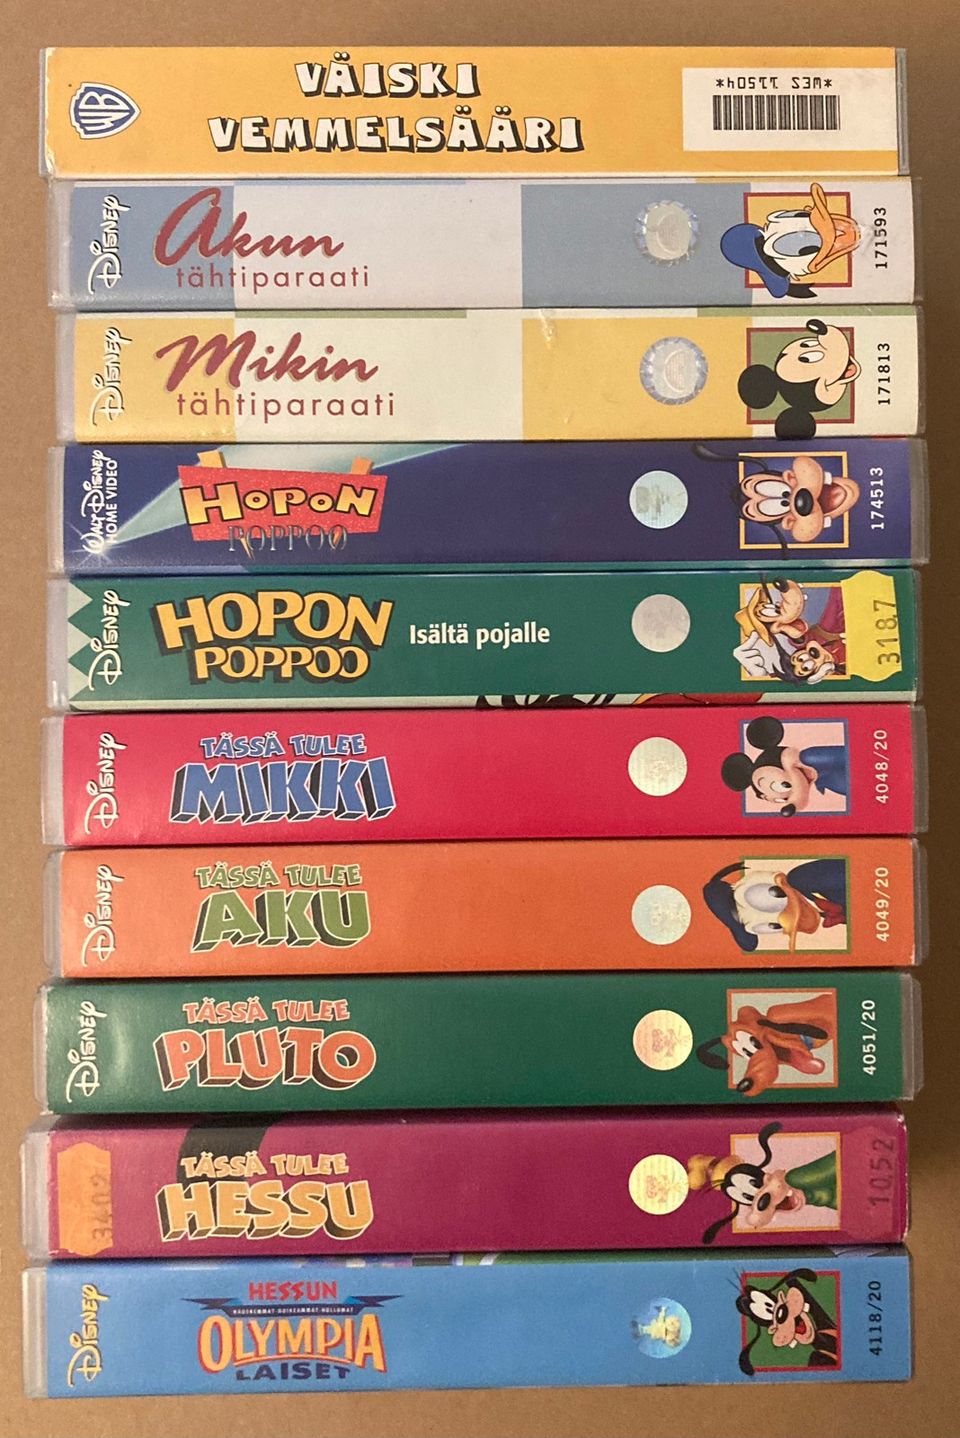 12kpl VHS kasetteja